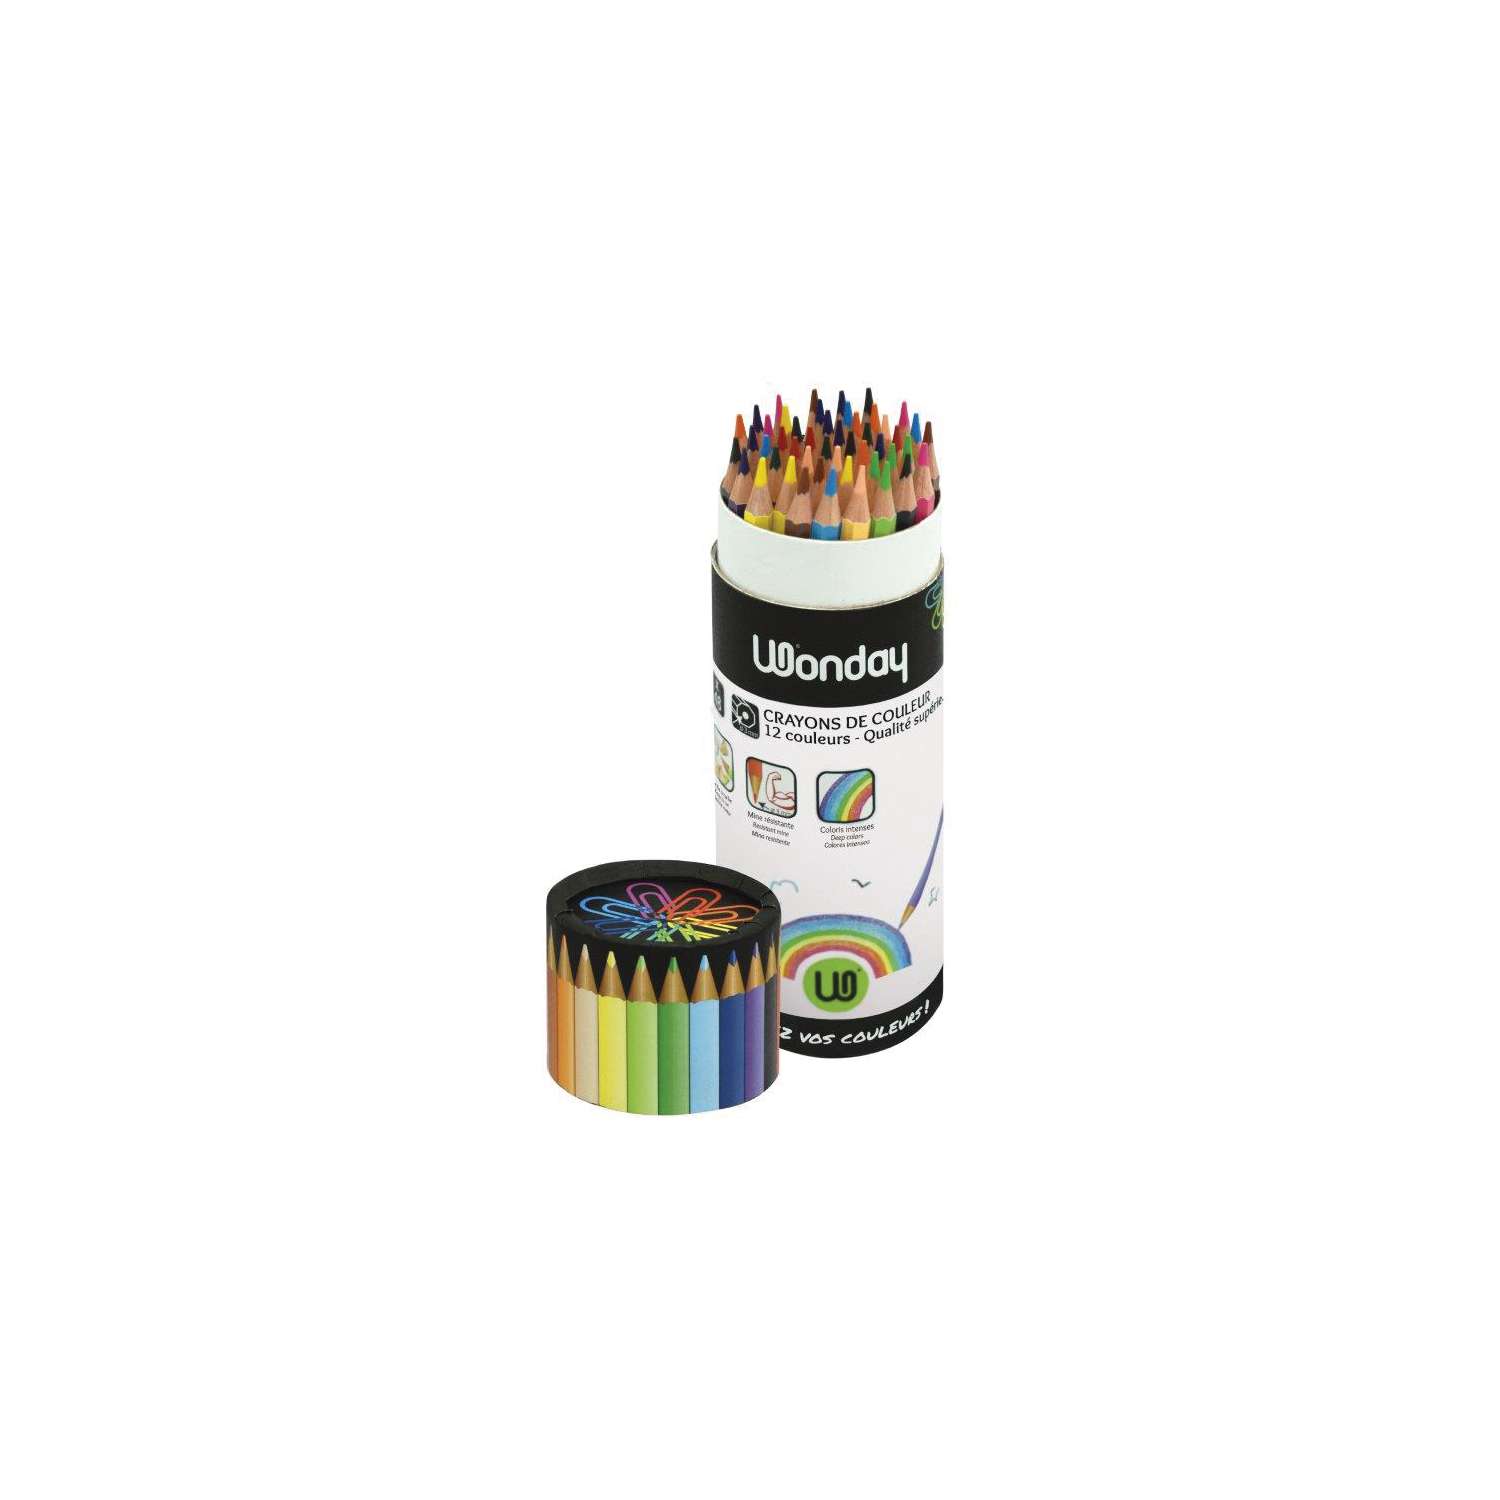 Caran D'ache Neocolor Ii Aquarelle Crayon Sets